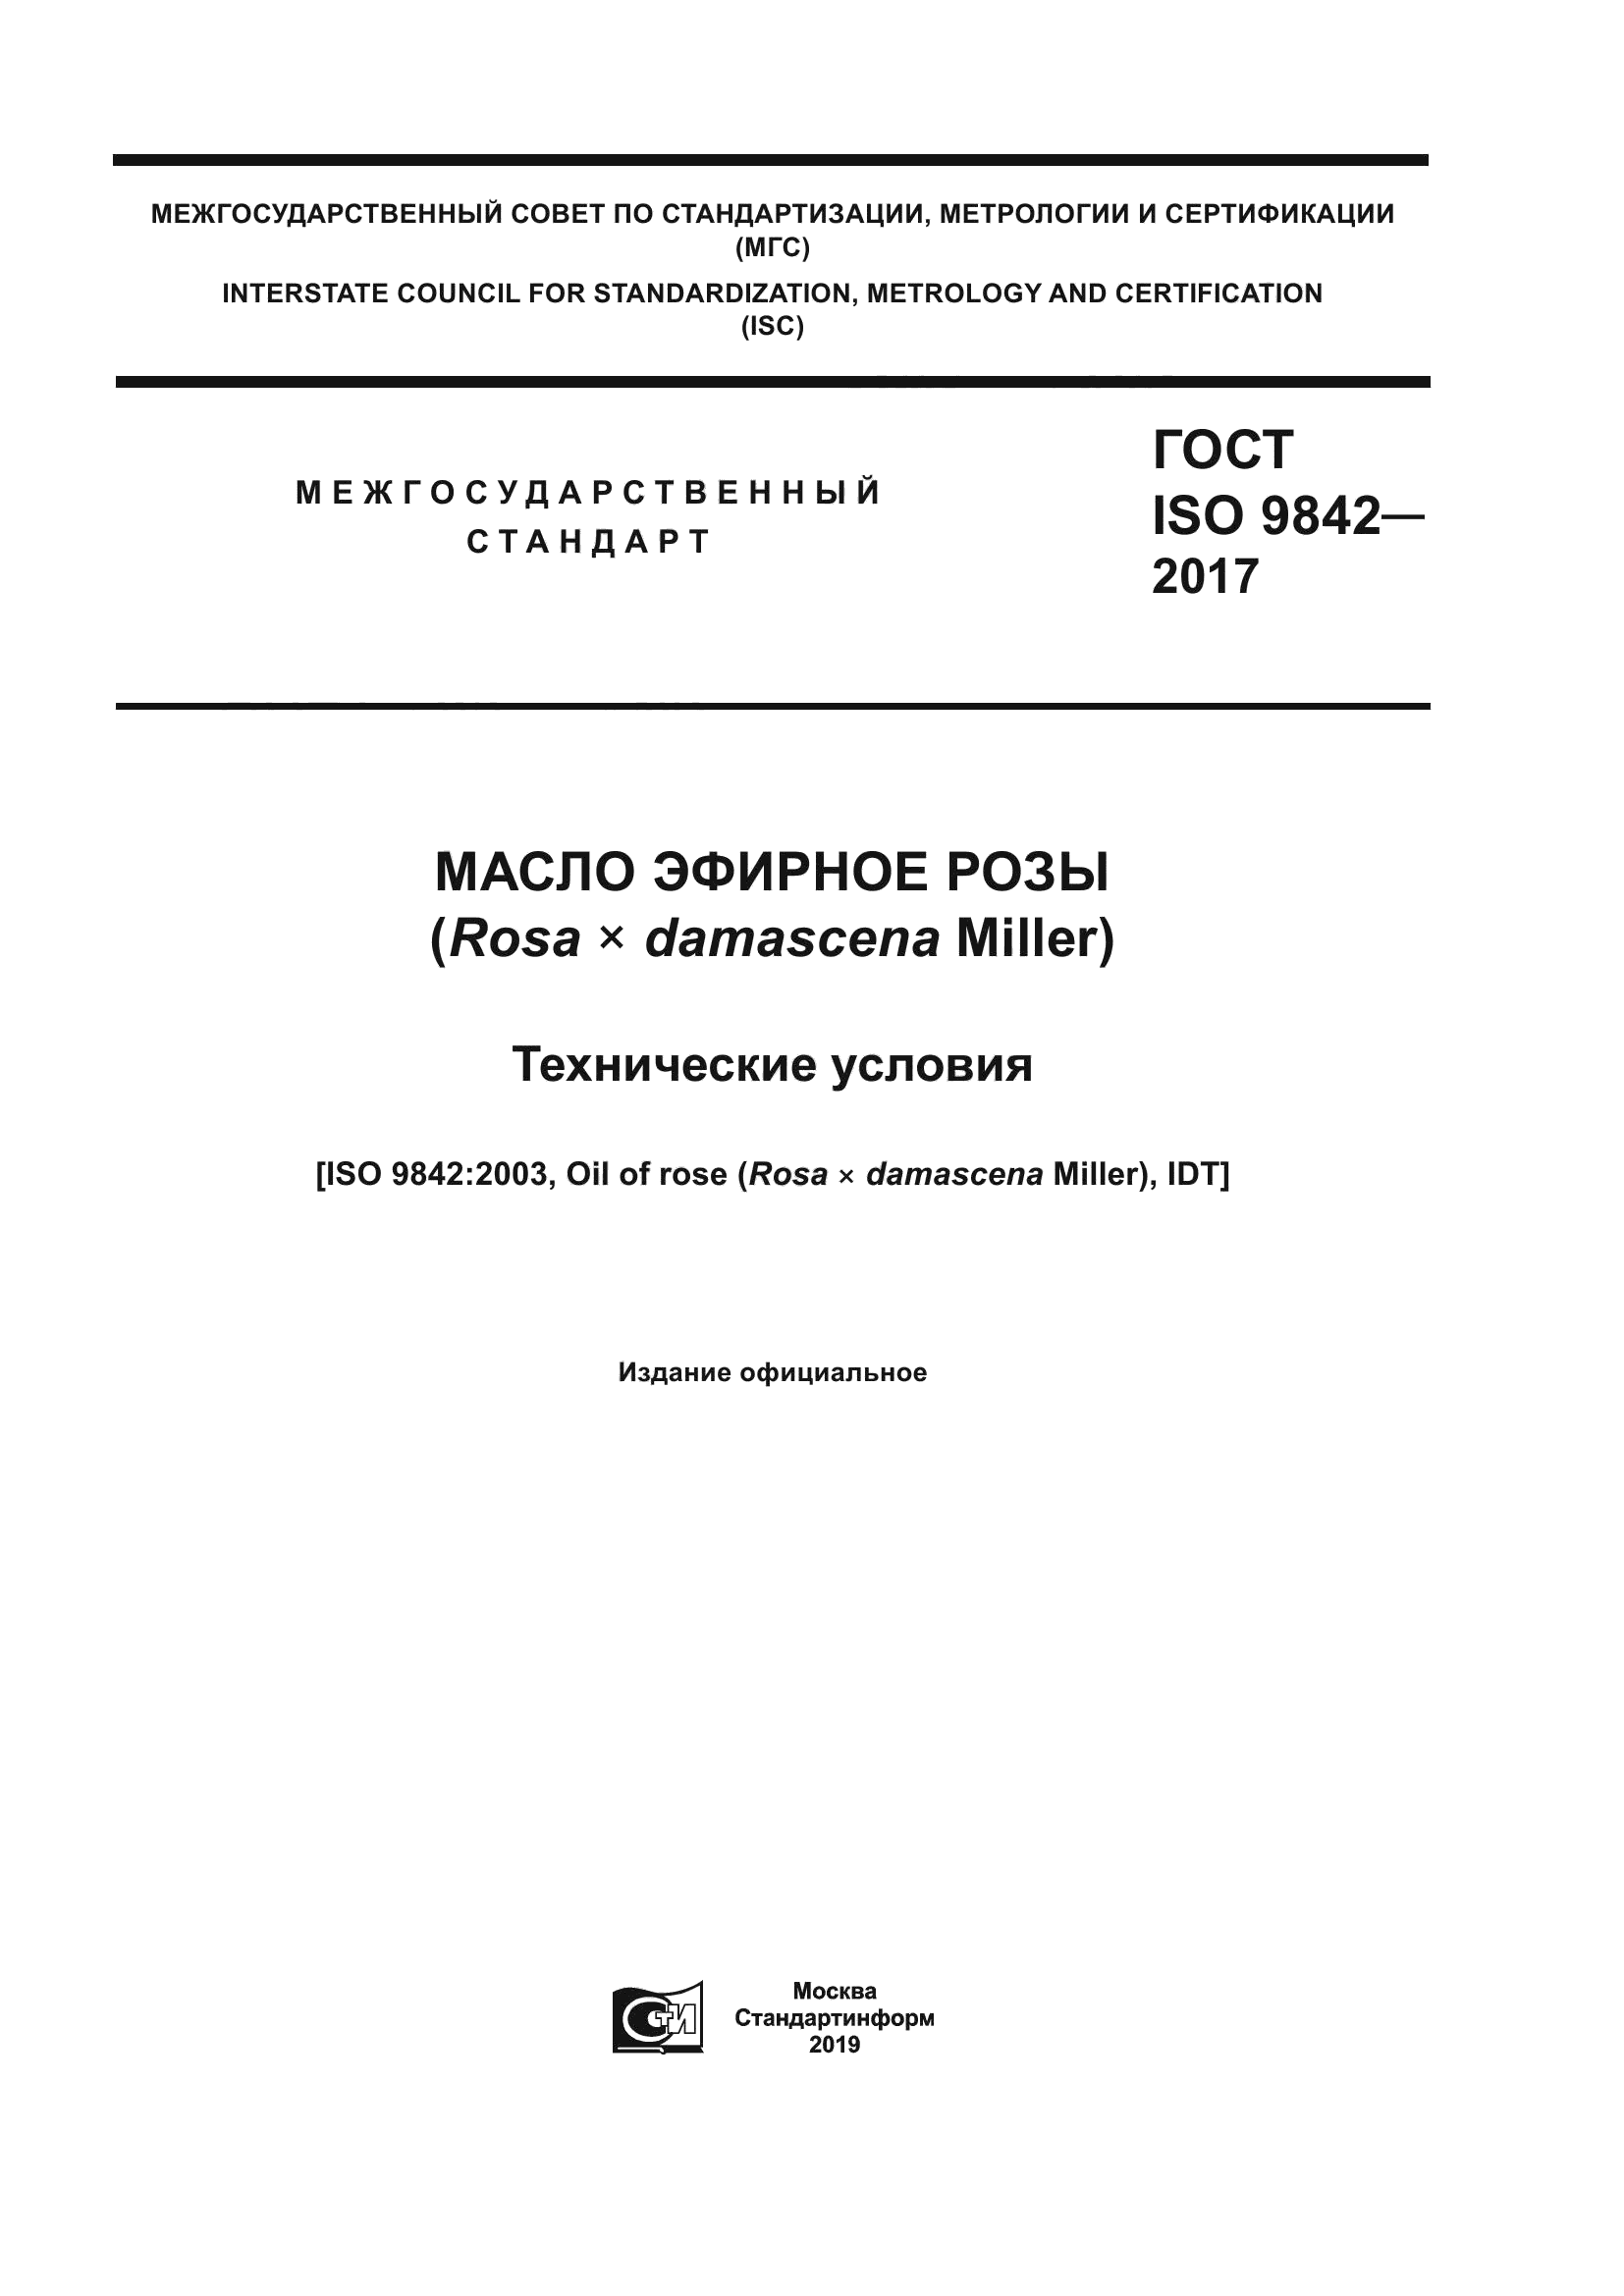 ГОСТ ISO 9842-2017